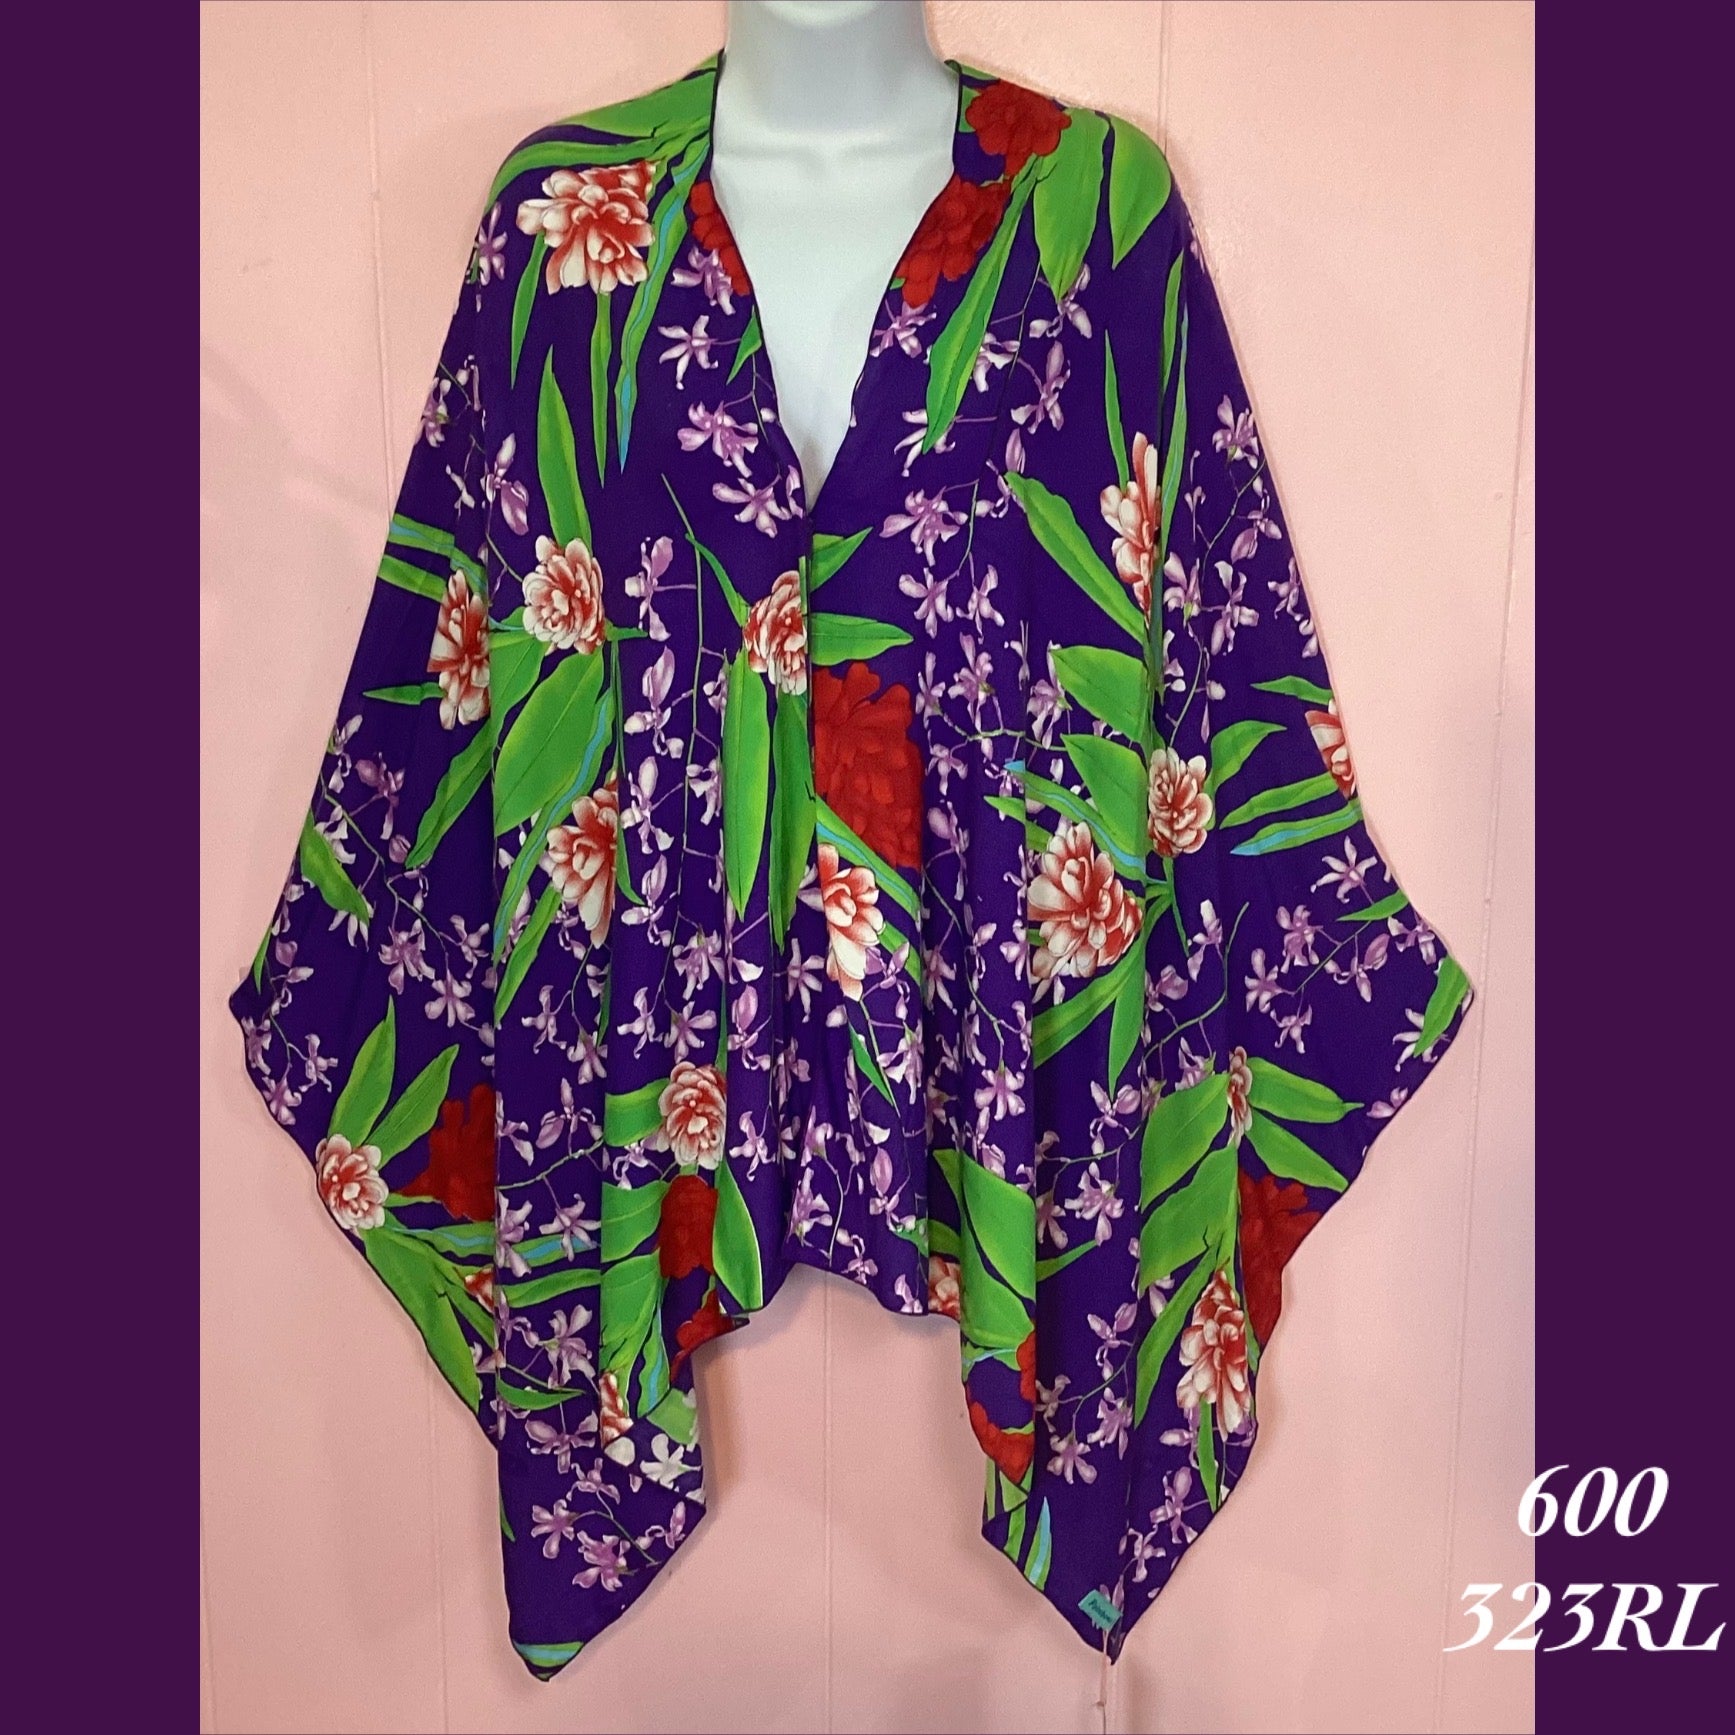 600 - 323RL , Shoulder wrap sarong